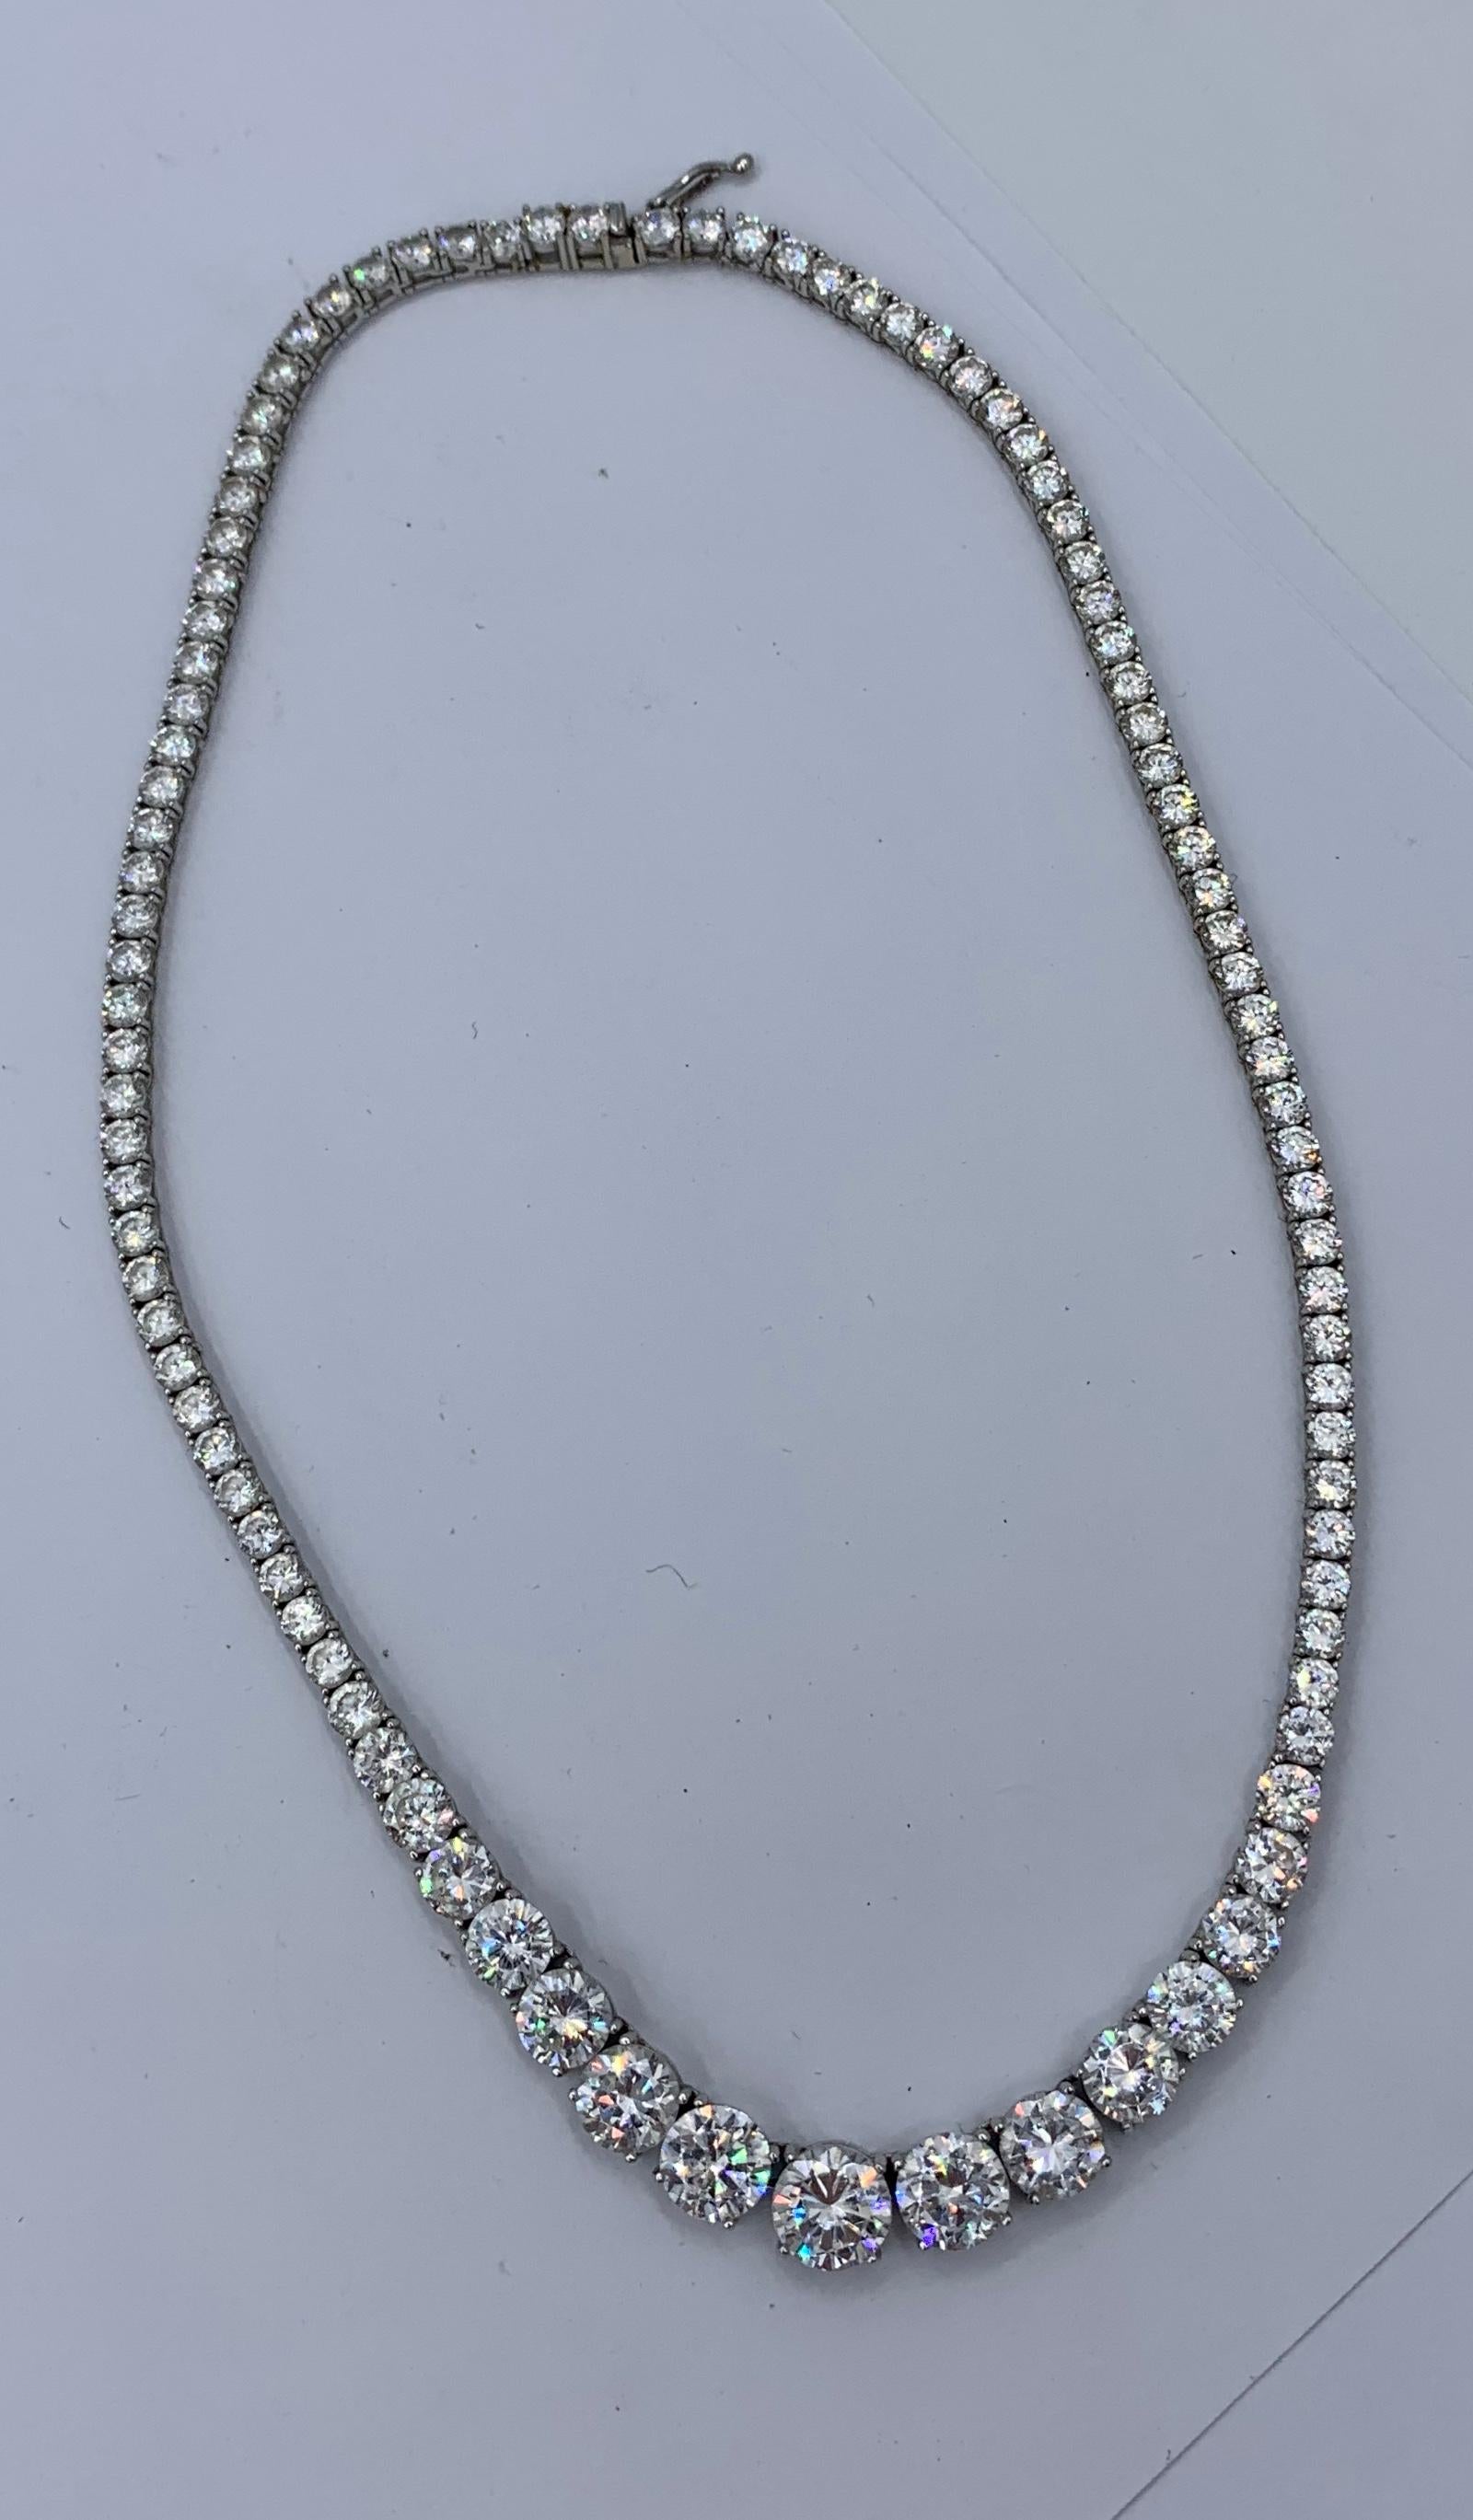 Il s'agit d'un magnifique collier de diamants en or blanc 14 carats appartenant à l'actrice Celeste Holm, lauréate d'un Academy Award, avec des photos de Mme Holm portant ce collier emblématique.  Ce collier est l'un des bijoux emblématiques de